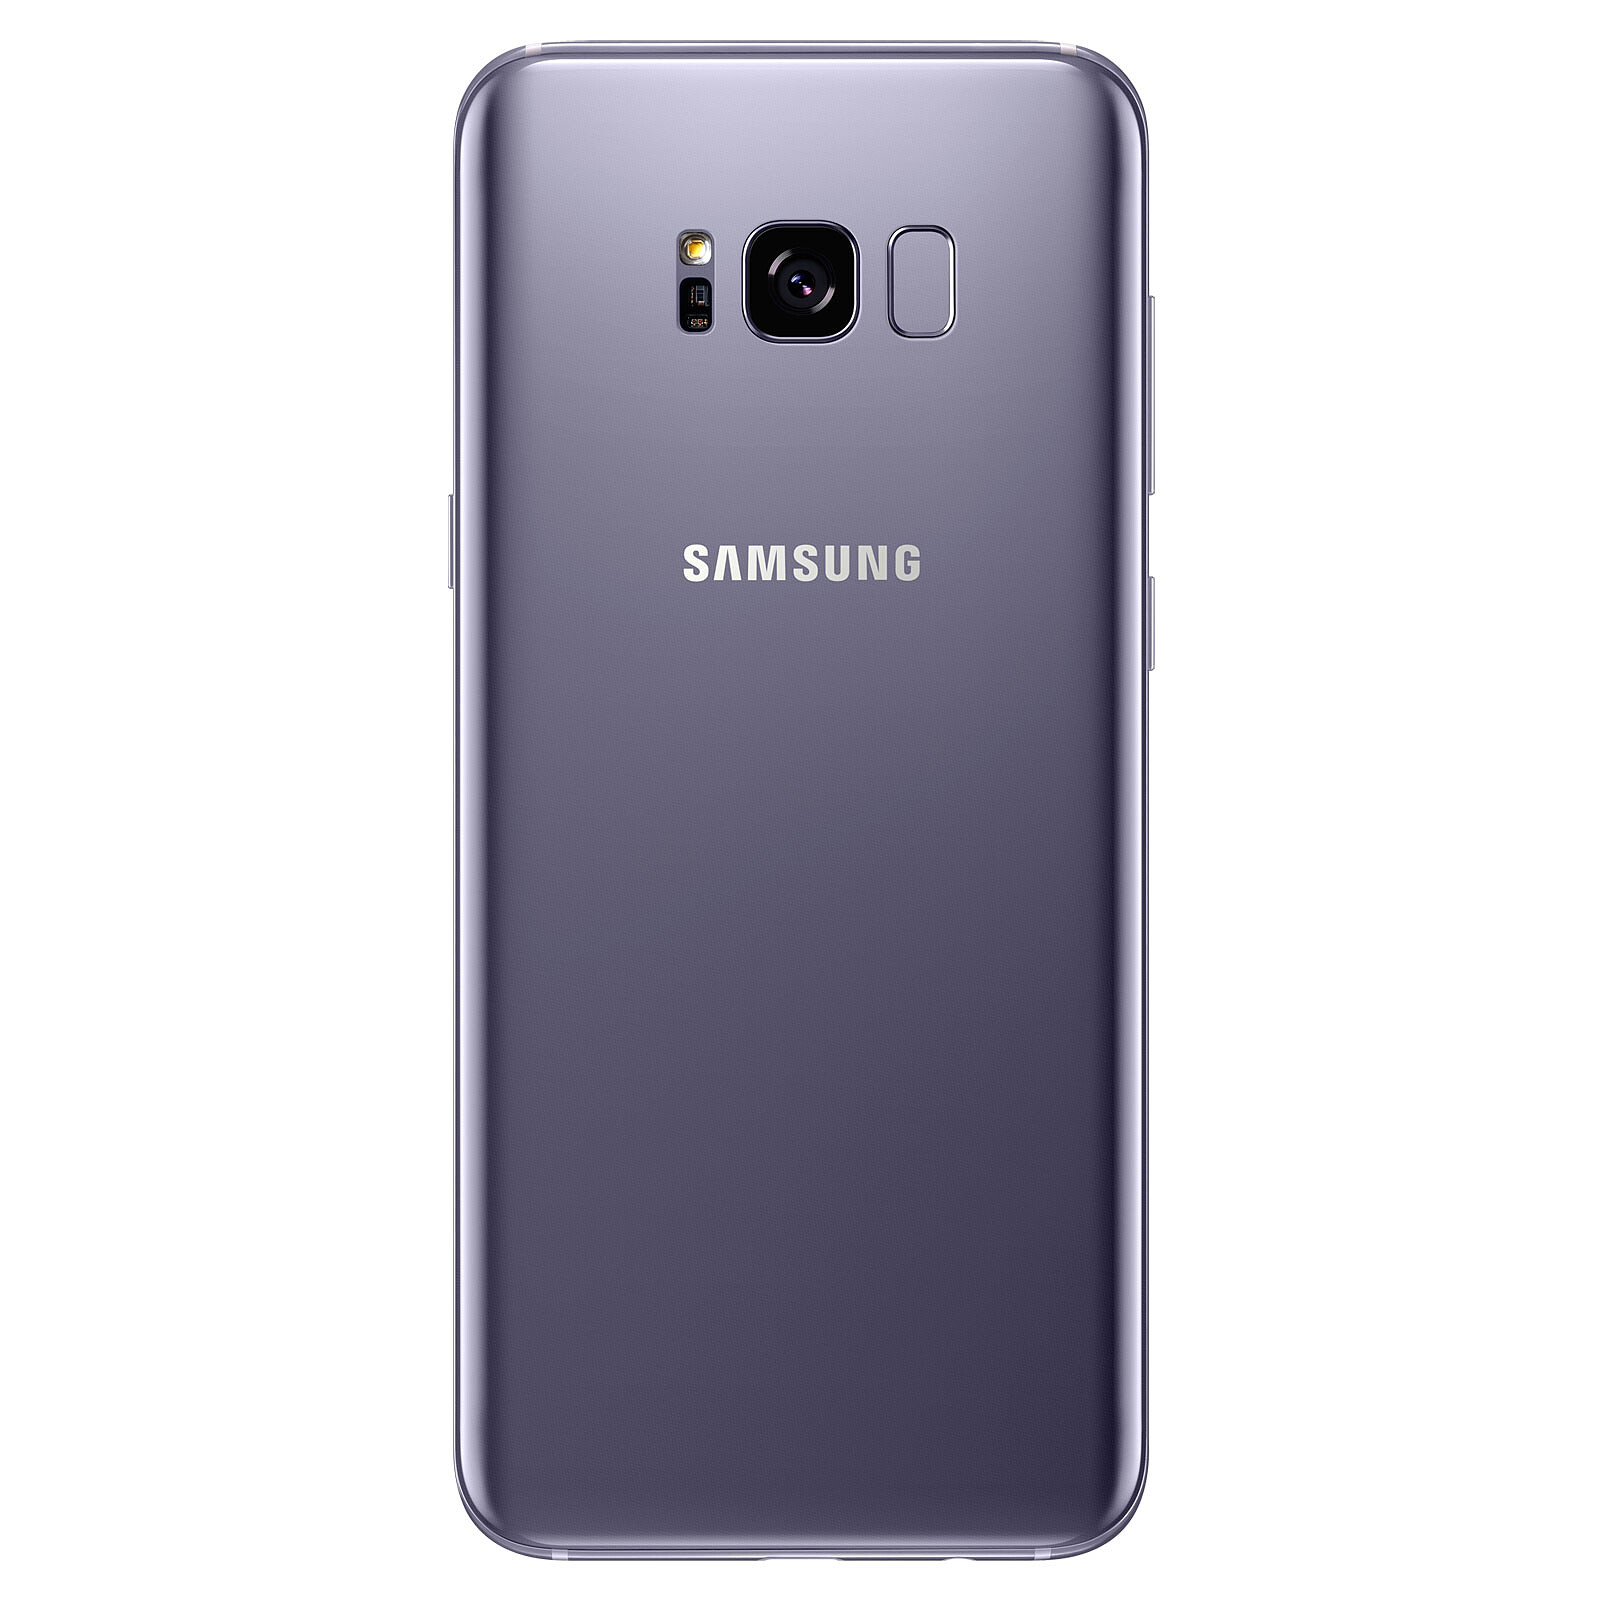 Samsung Galaxy S8 Gray